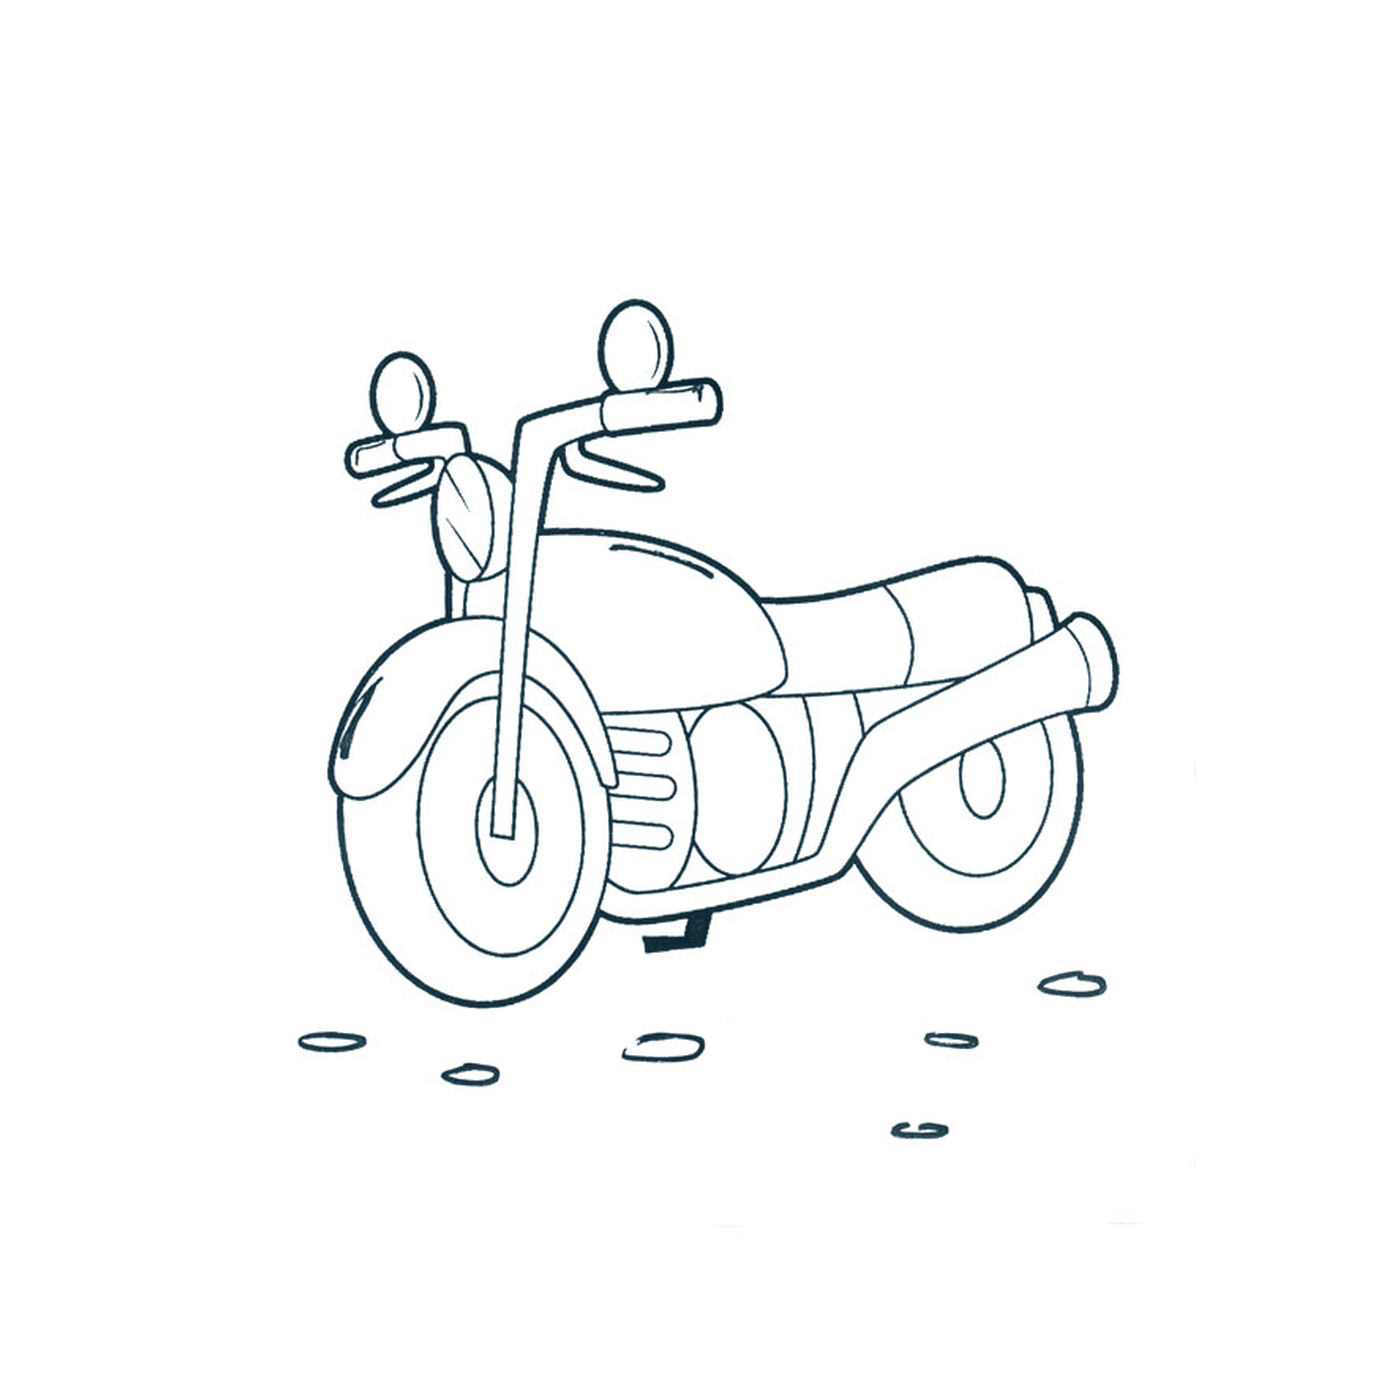  motocicleta colocada no chão 